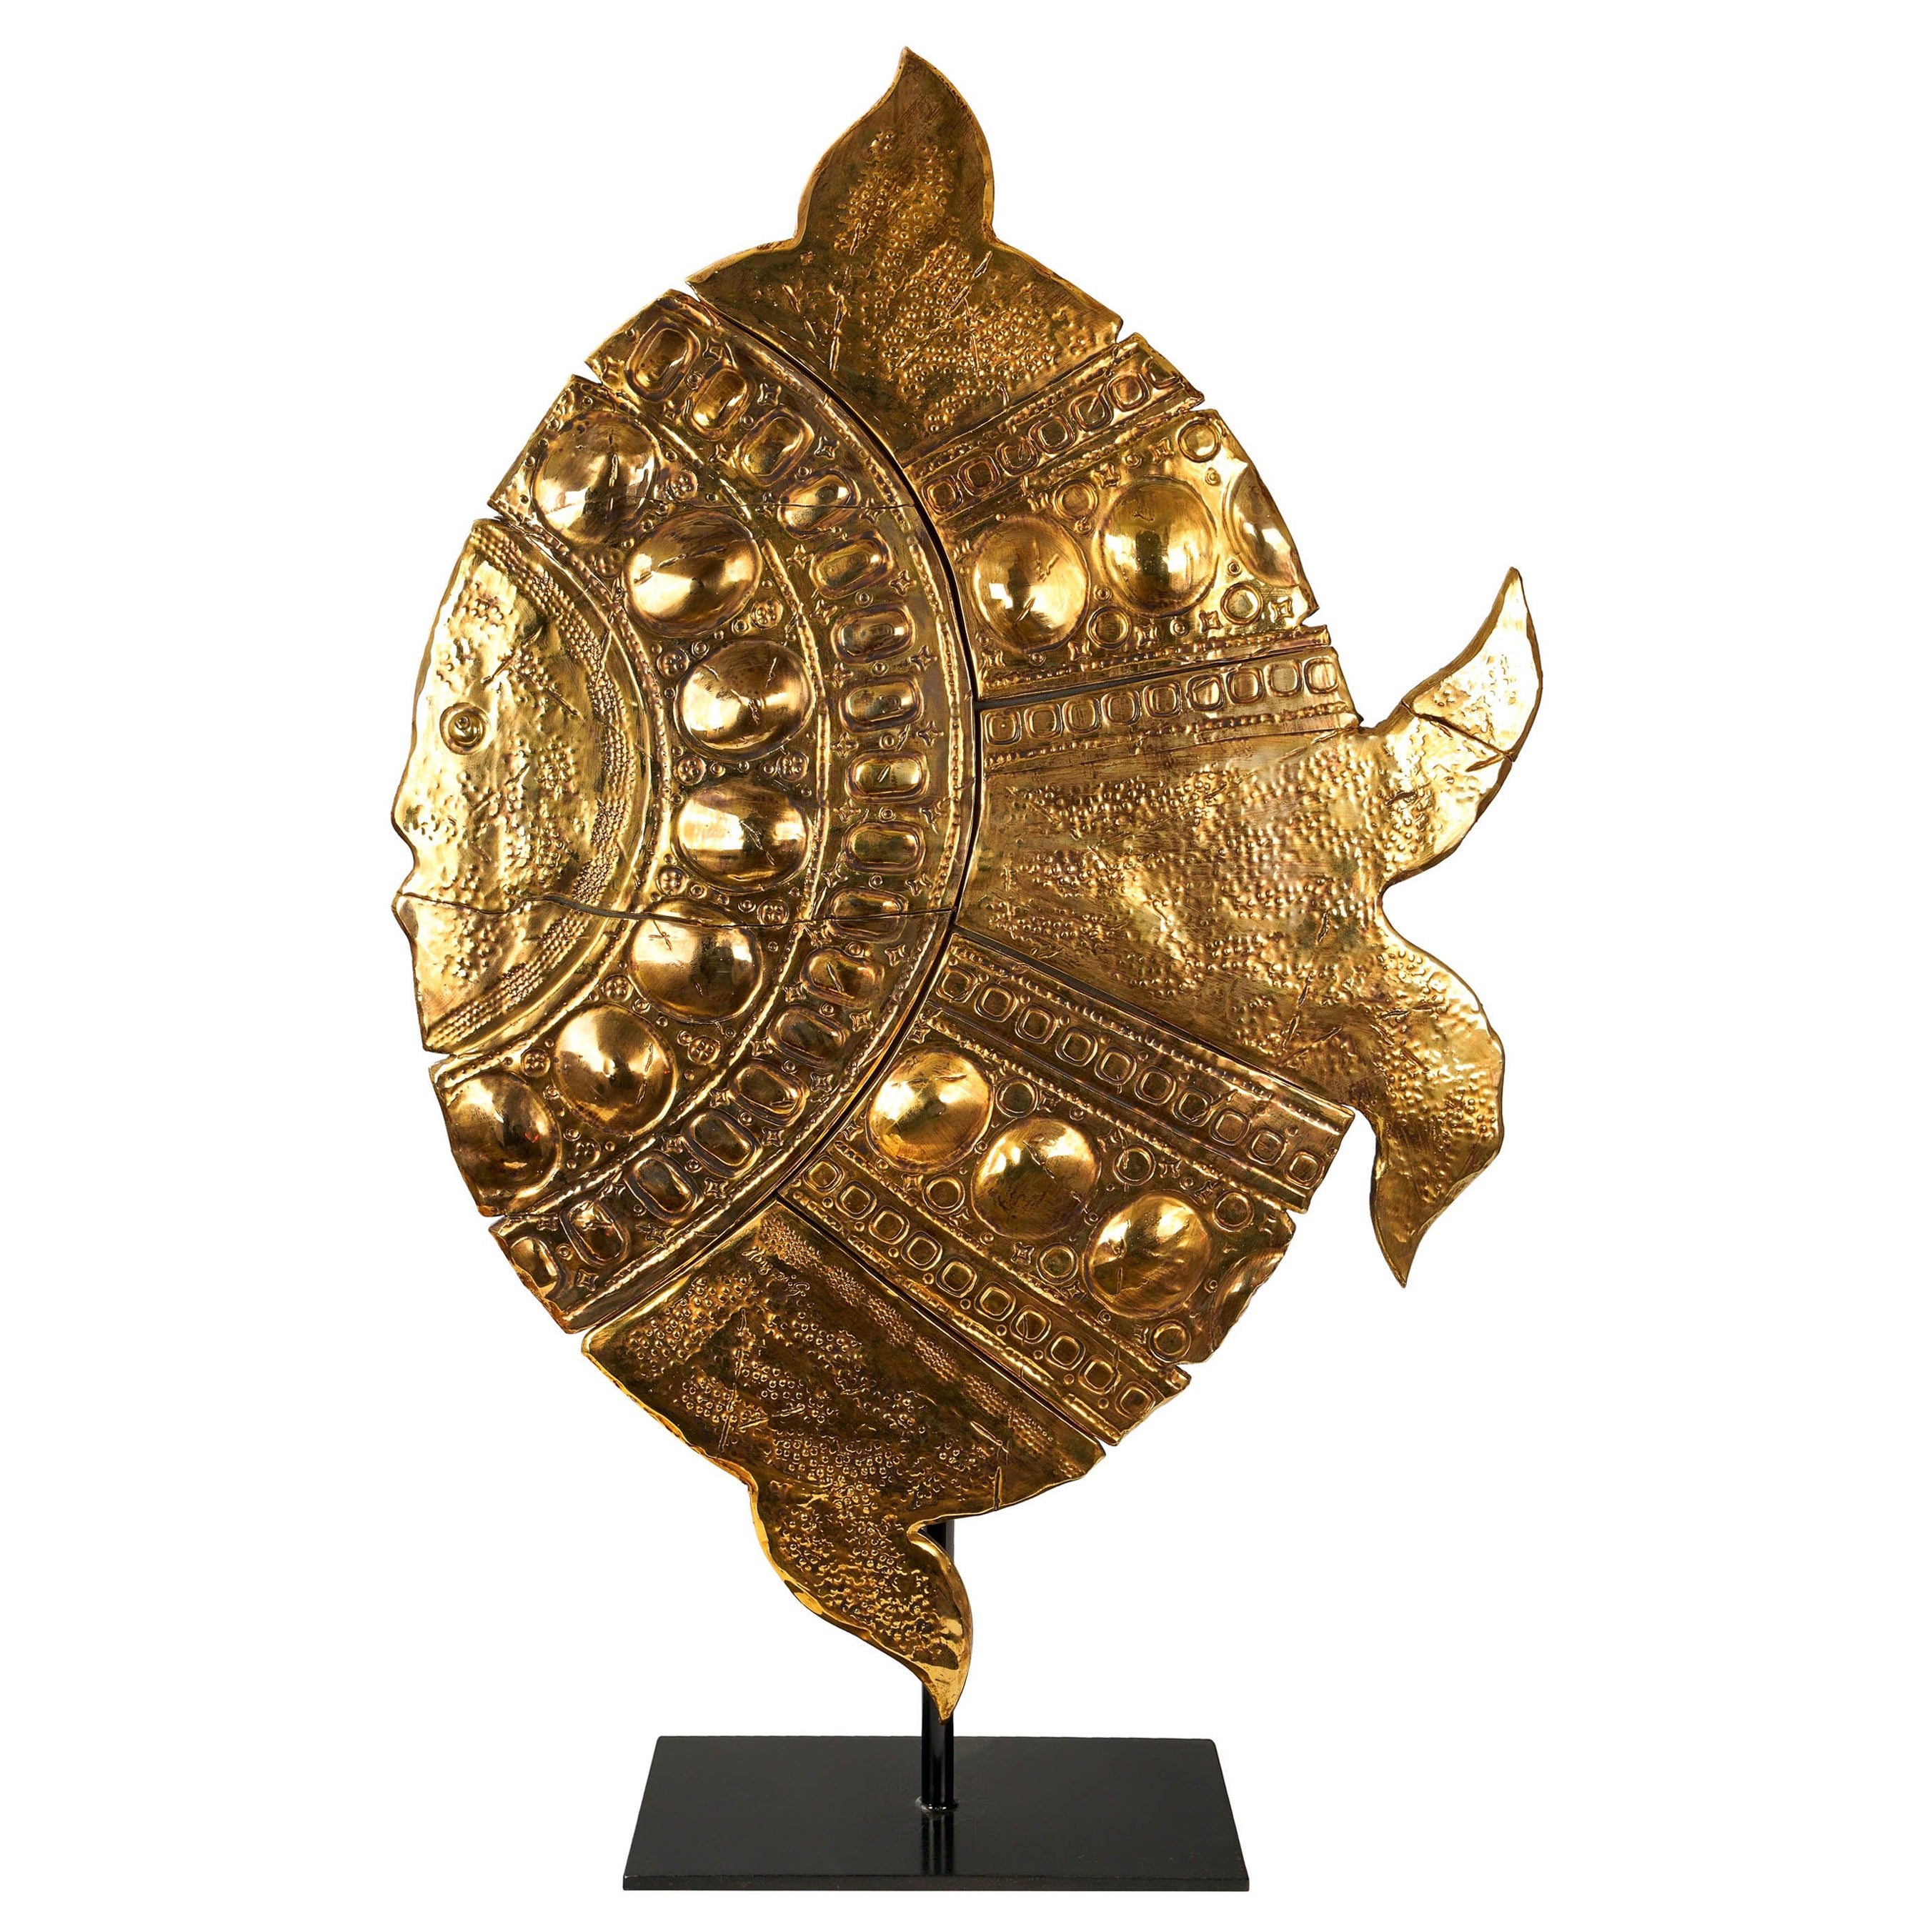 Keramische Skulptur, handgefertigt in Italien und verziert mit der Lustertechnik in 24Kt Gold. Die Skulptur ist auf einer schwarz lackierten Holzplatte montiert, die auf einem verstellbaren, schwarz lackierten Metallsockel befestigt ist. Auf Wunsch